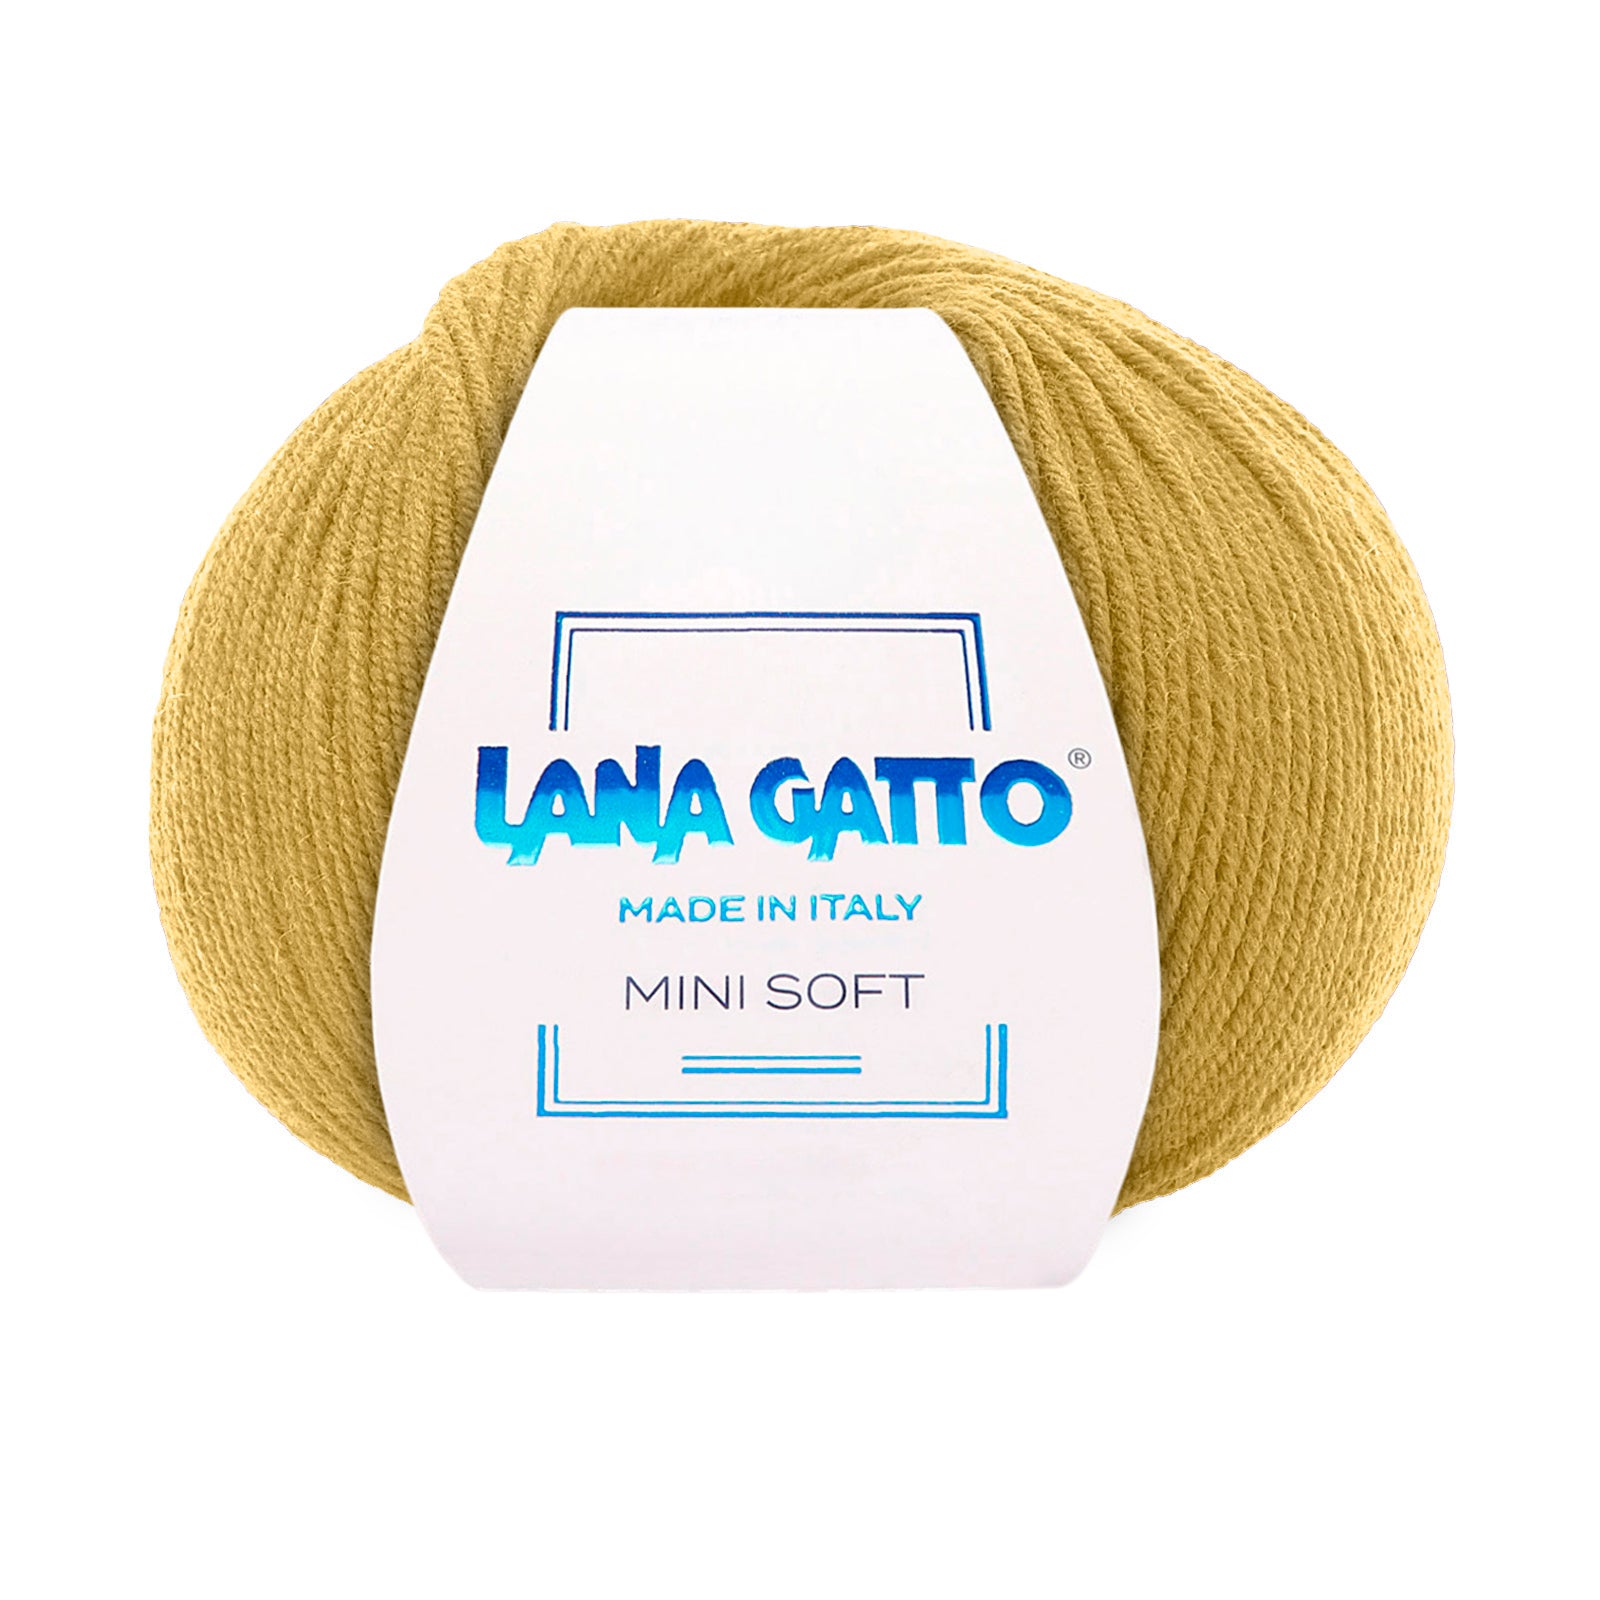 100% Pure Virgin Merino Wool Extrafine, Lana Gatto Mini Soft Line - Warm Colors